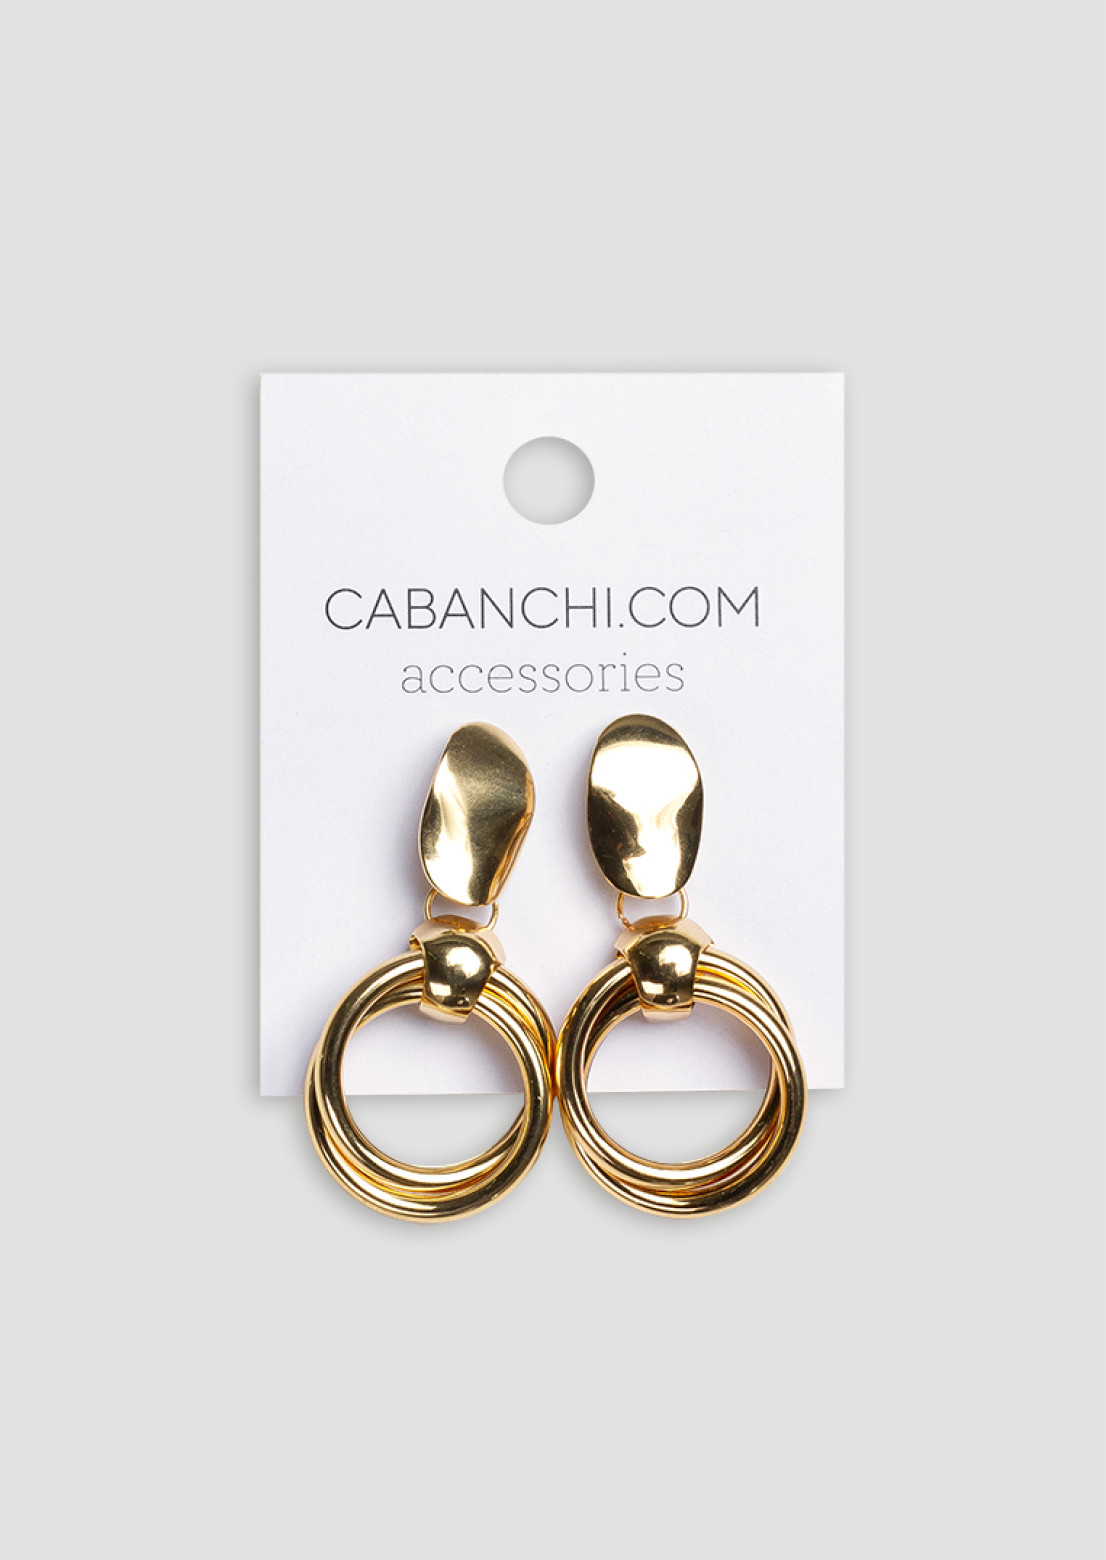 Golden massive double earrings